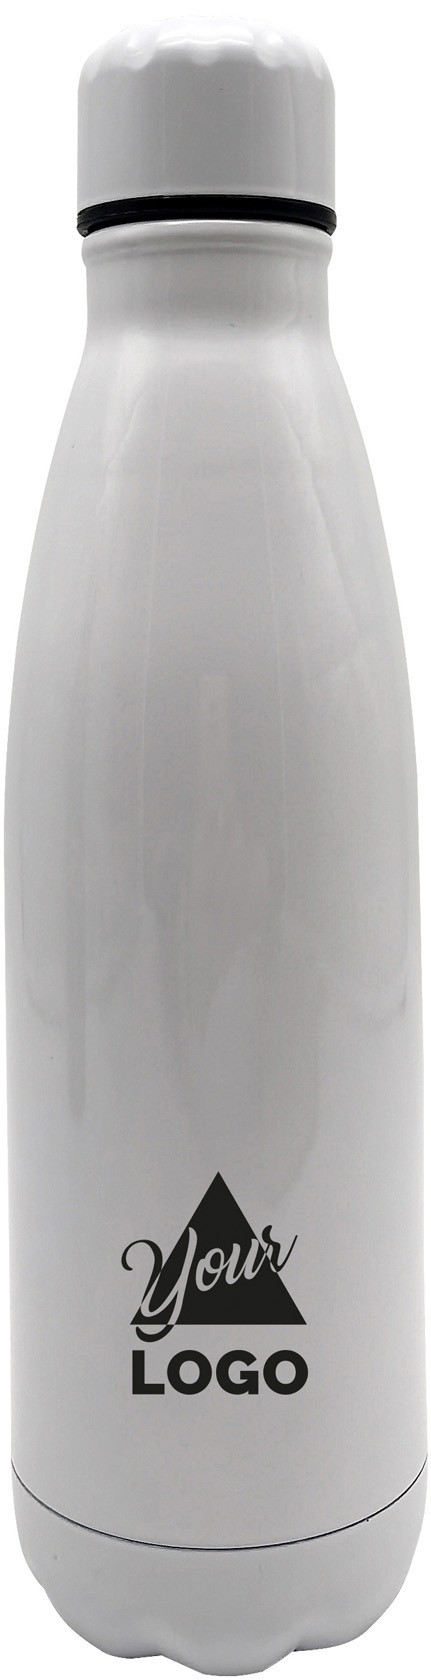 Termoláhev v bílé barvě z nerezového materiálu o objemu 500 ml F03.4213.00